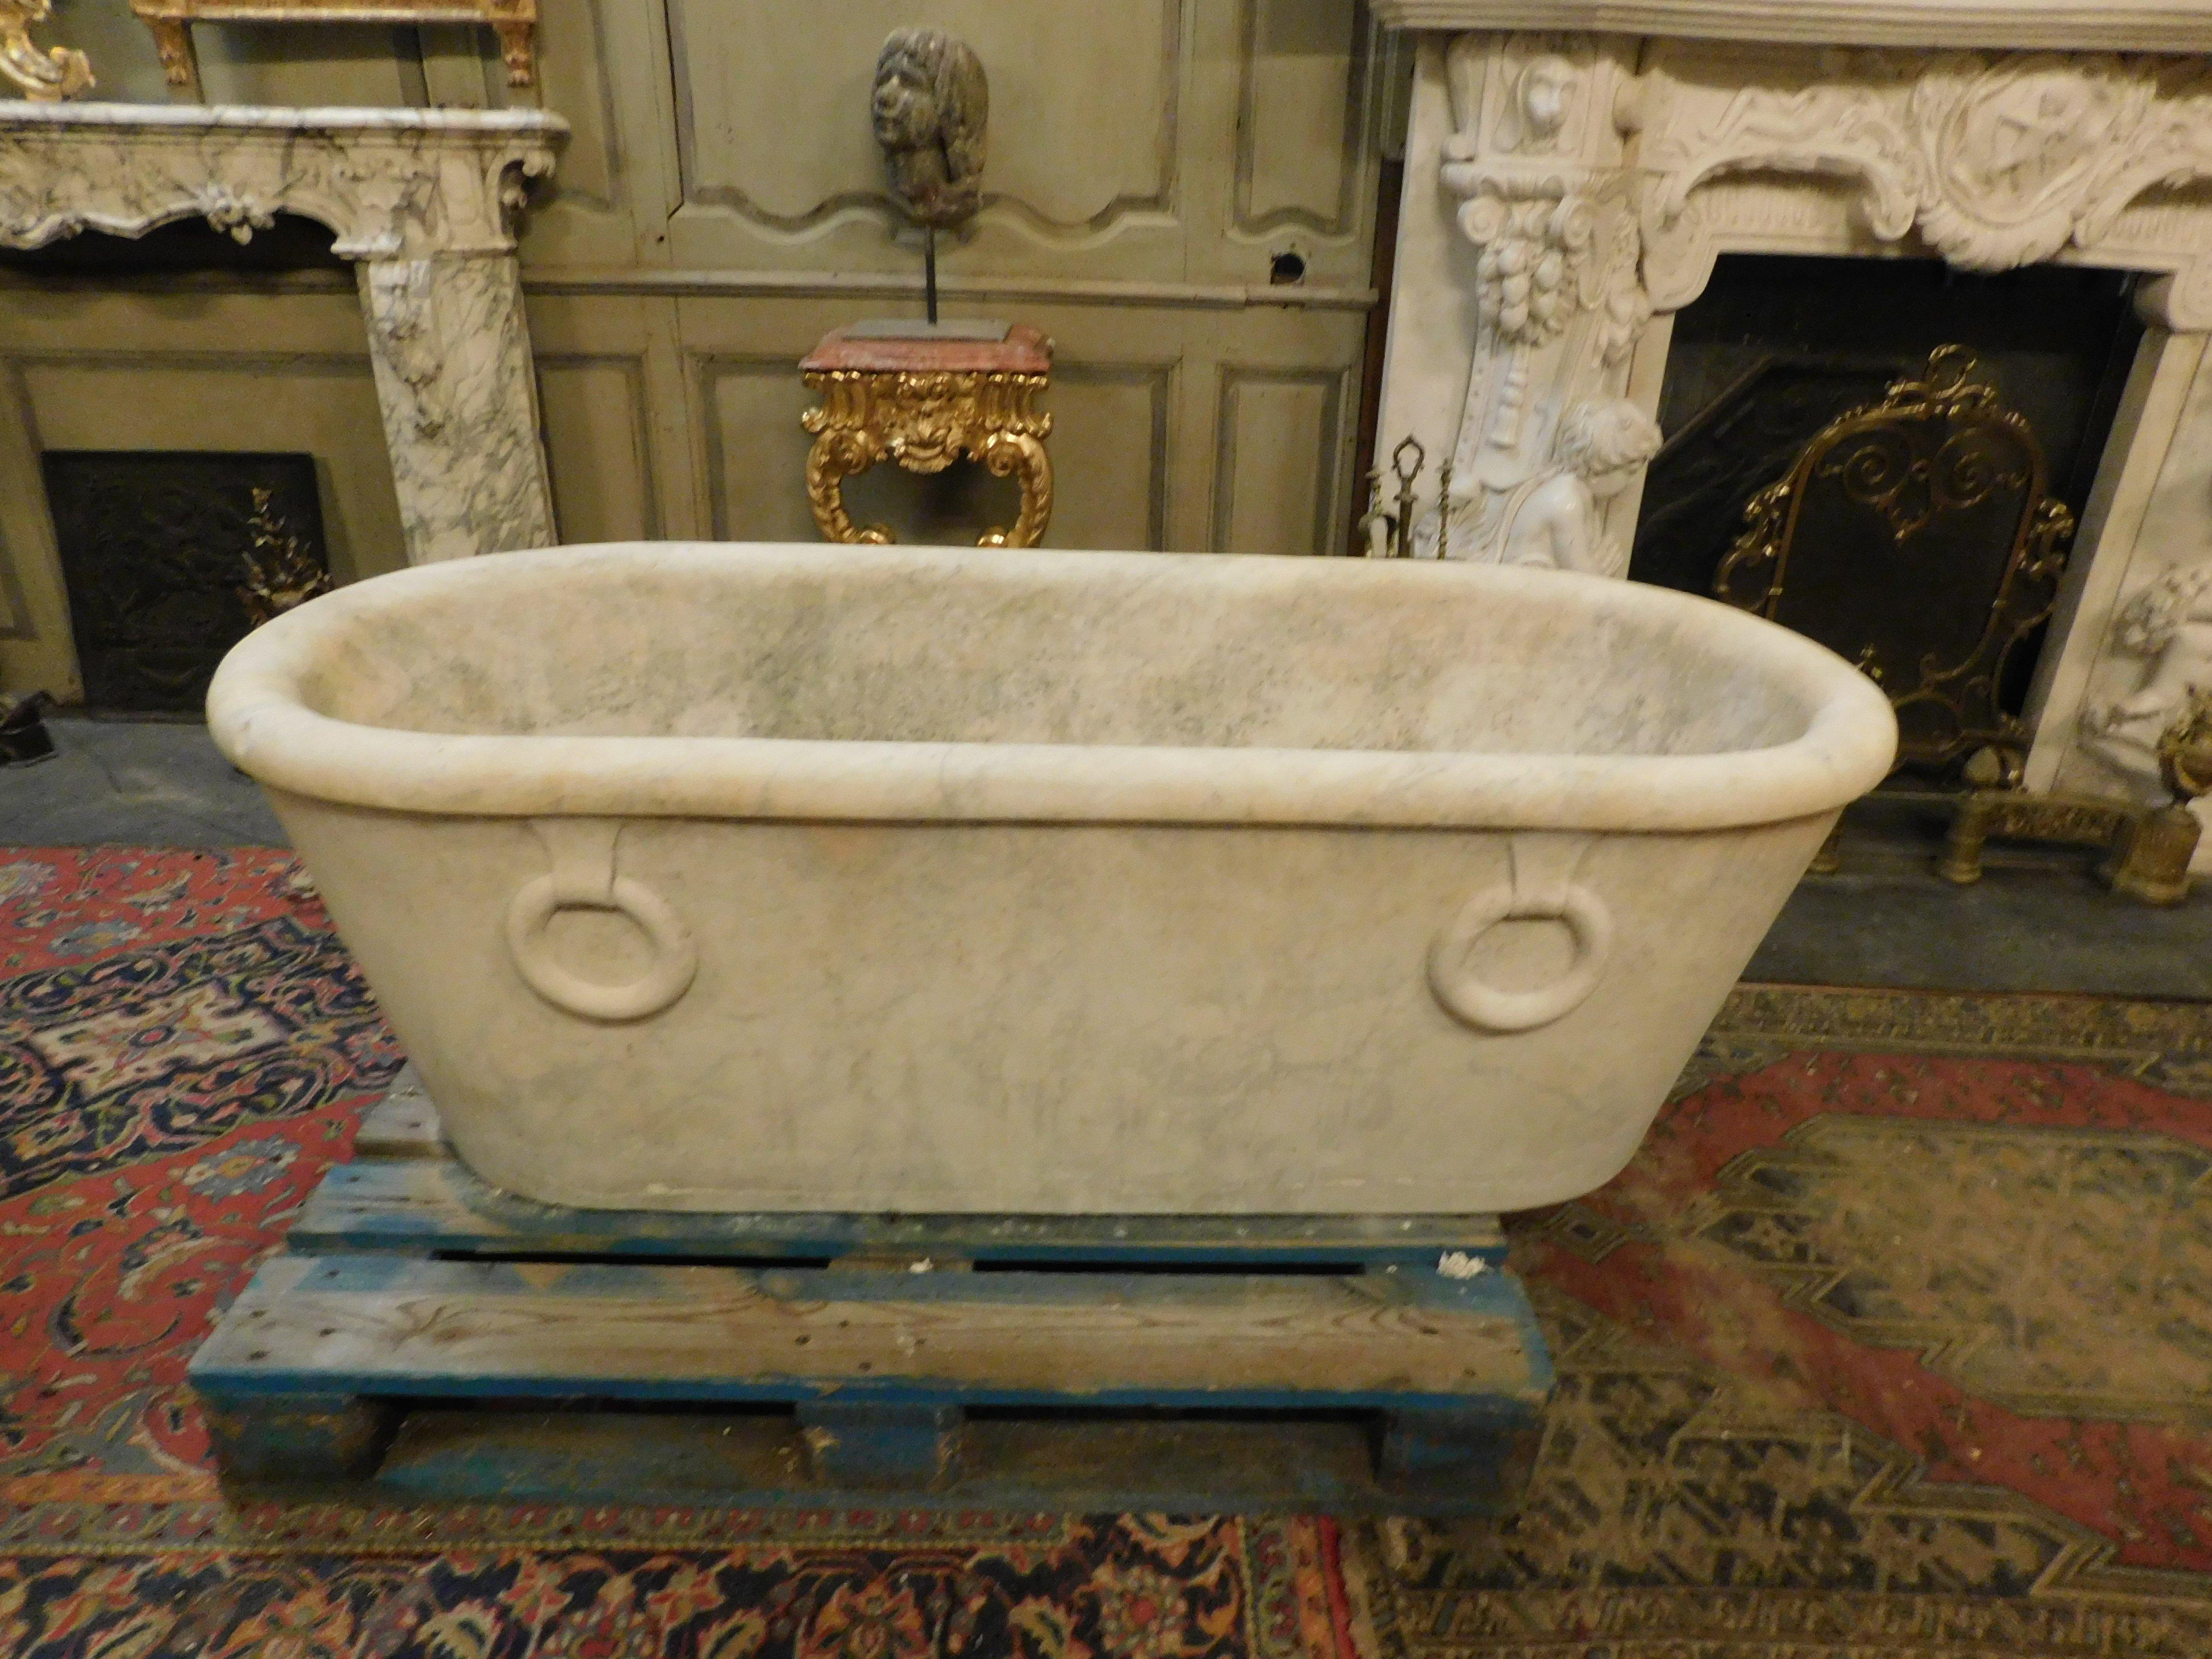 Antike und schöne Badewanne aus weißem Marmor, handgeschnitzt mit gefälschten Seitengriffen, ovale Form mit Abflussloch. Sie wurde als Badewanne in einem edlen Badezimmer aus dem 19. Jahrhundert, einem Palast in Italien, verwendet.
Bereits